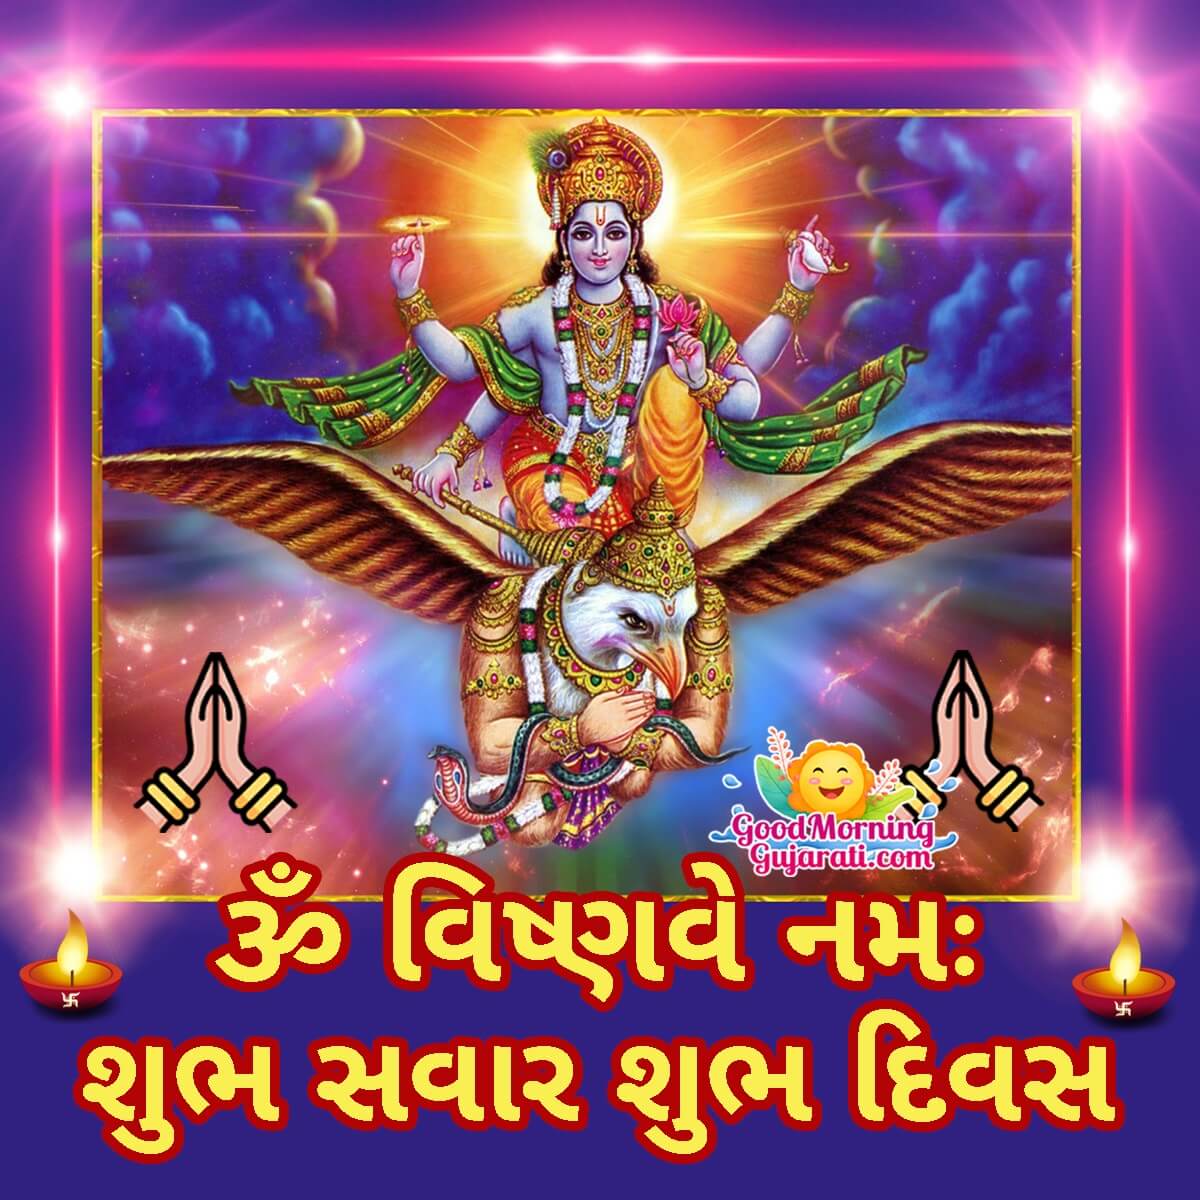 Good Morning Shri Vishnu Gujarati Images